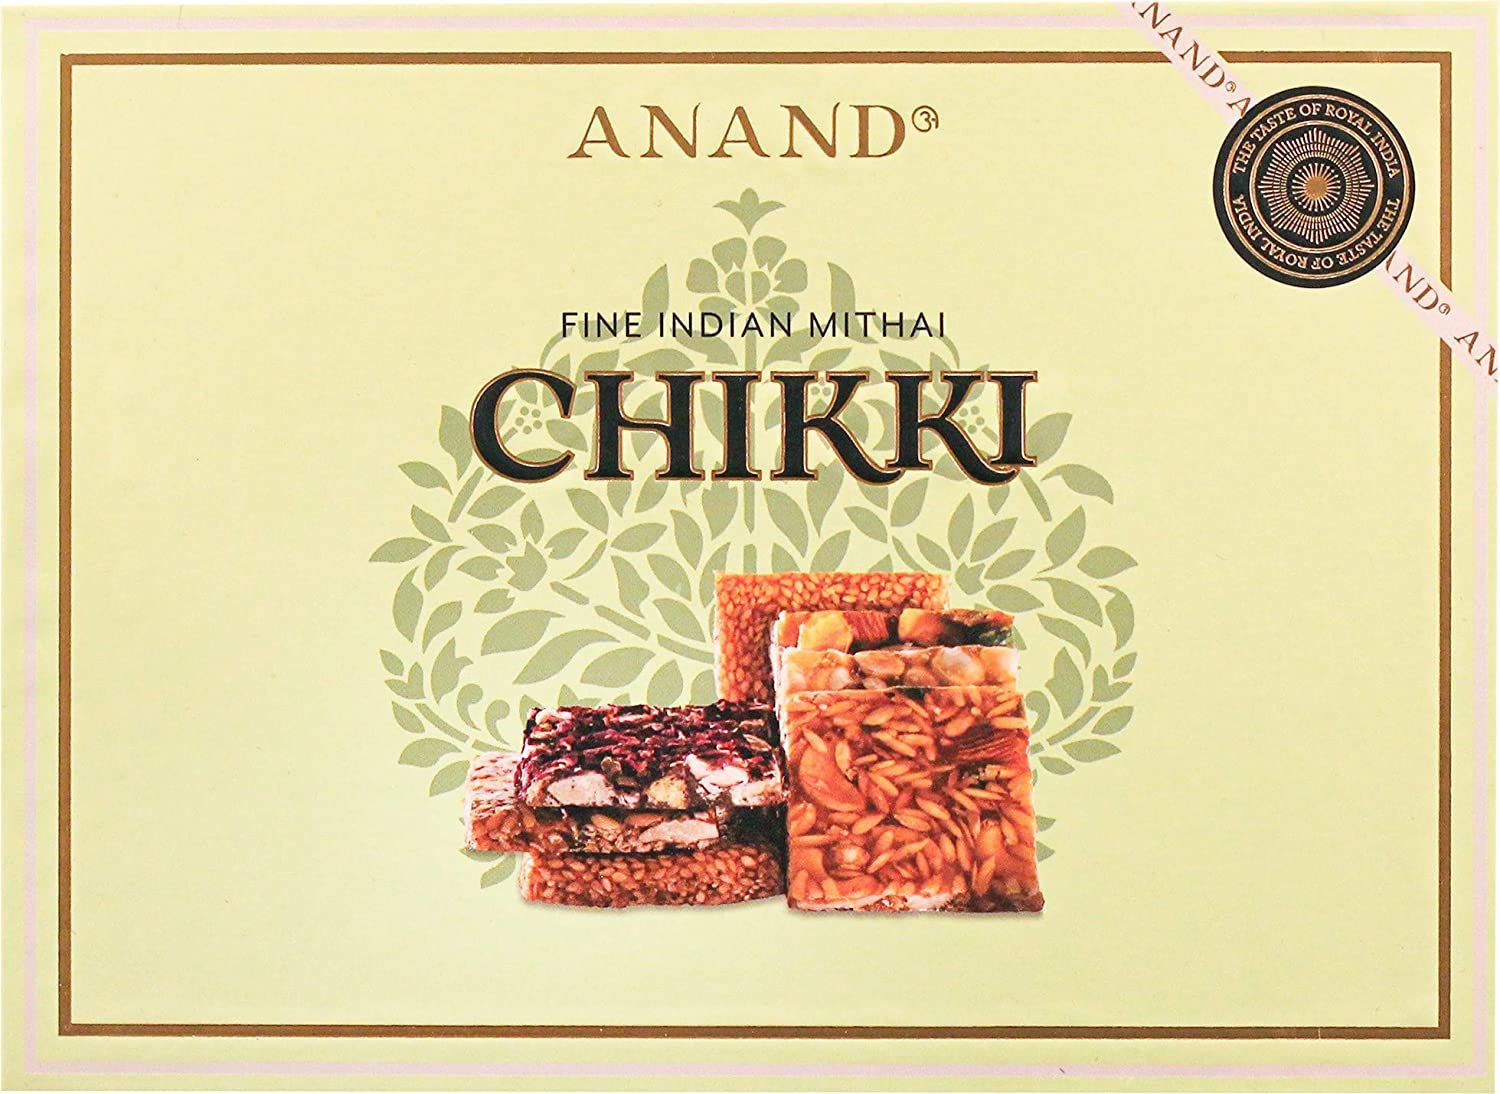 Anand Assorted Chikki Image